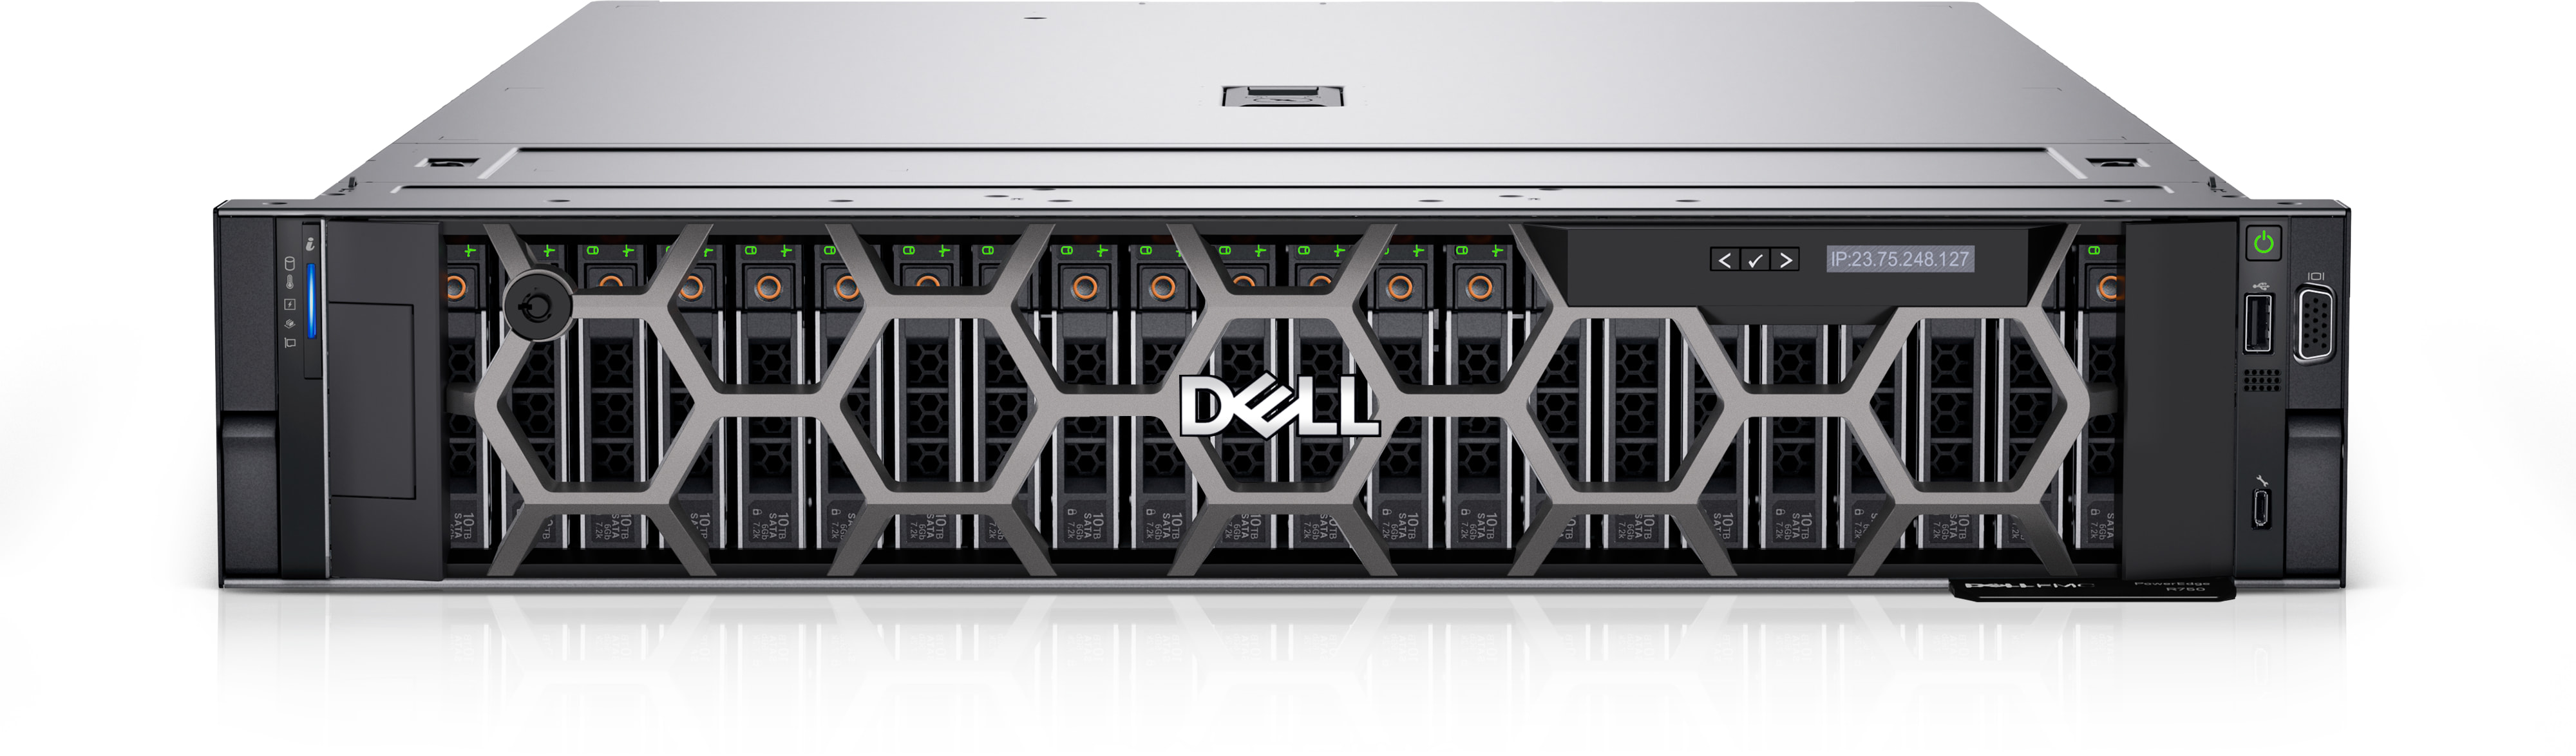 Servidor de montaje en rack Dell EMC PowerEdge R750 | imagen de referencia